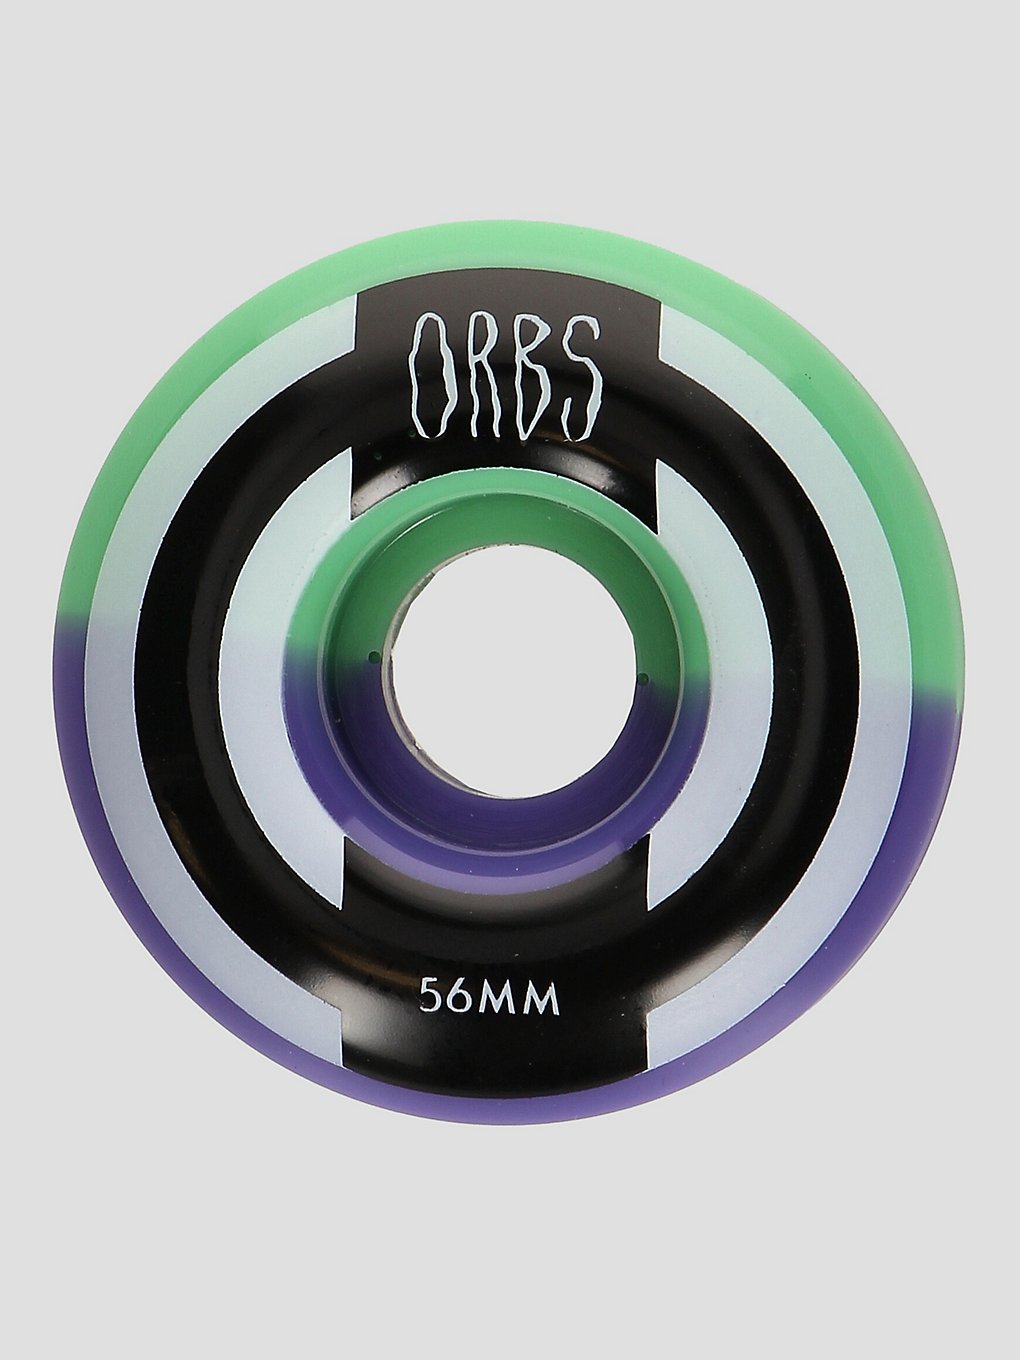 Welcome Orbs Apparitions - Round - 99A 56mm Rollen lavender split kaufen